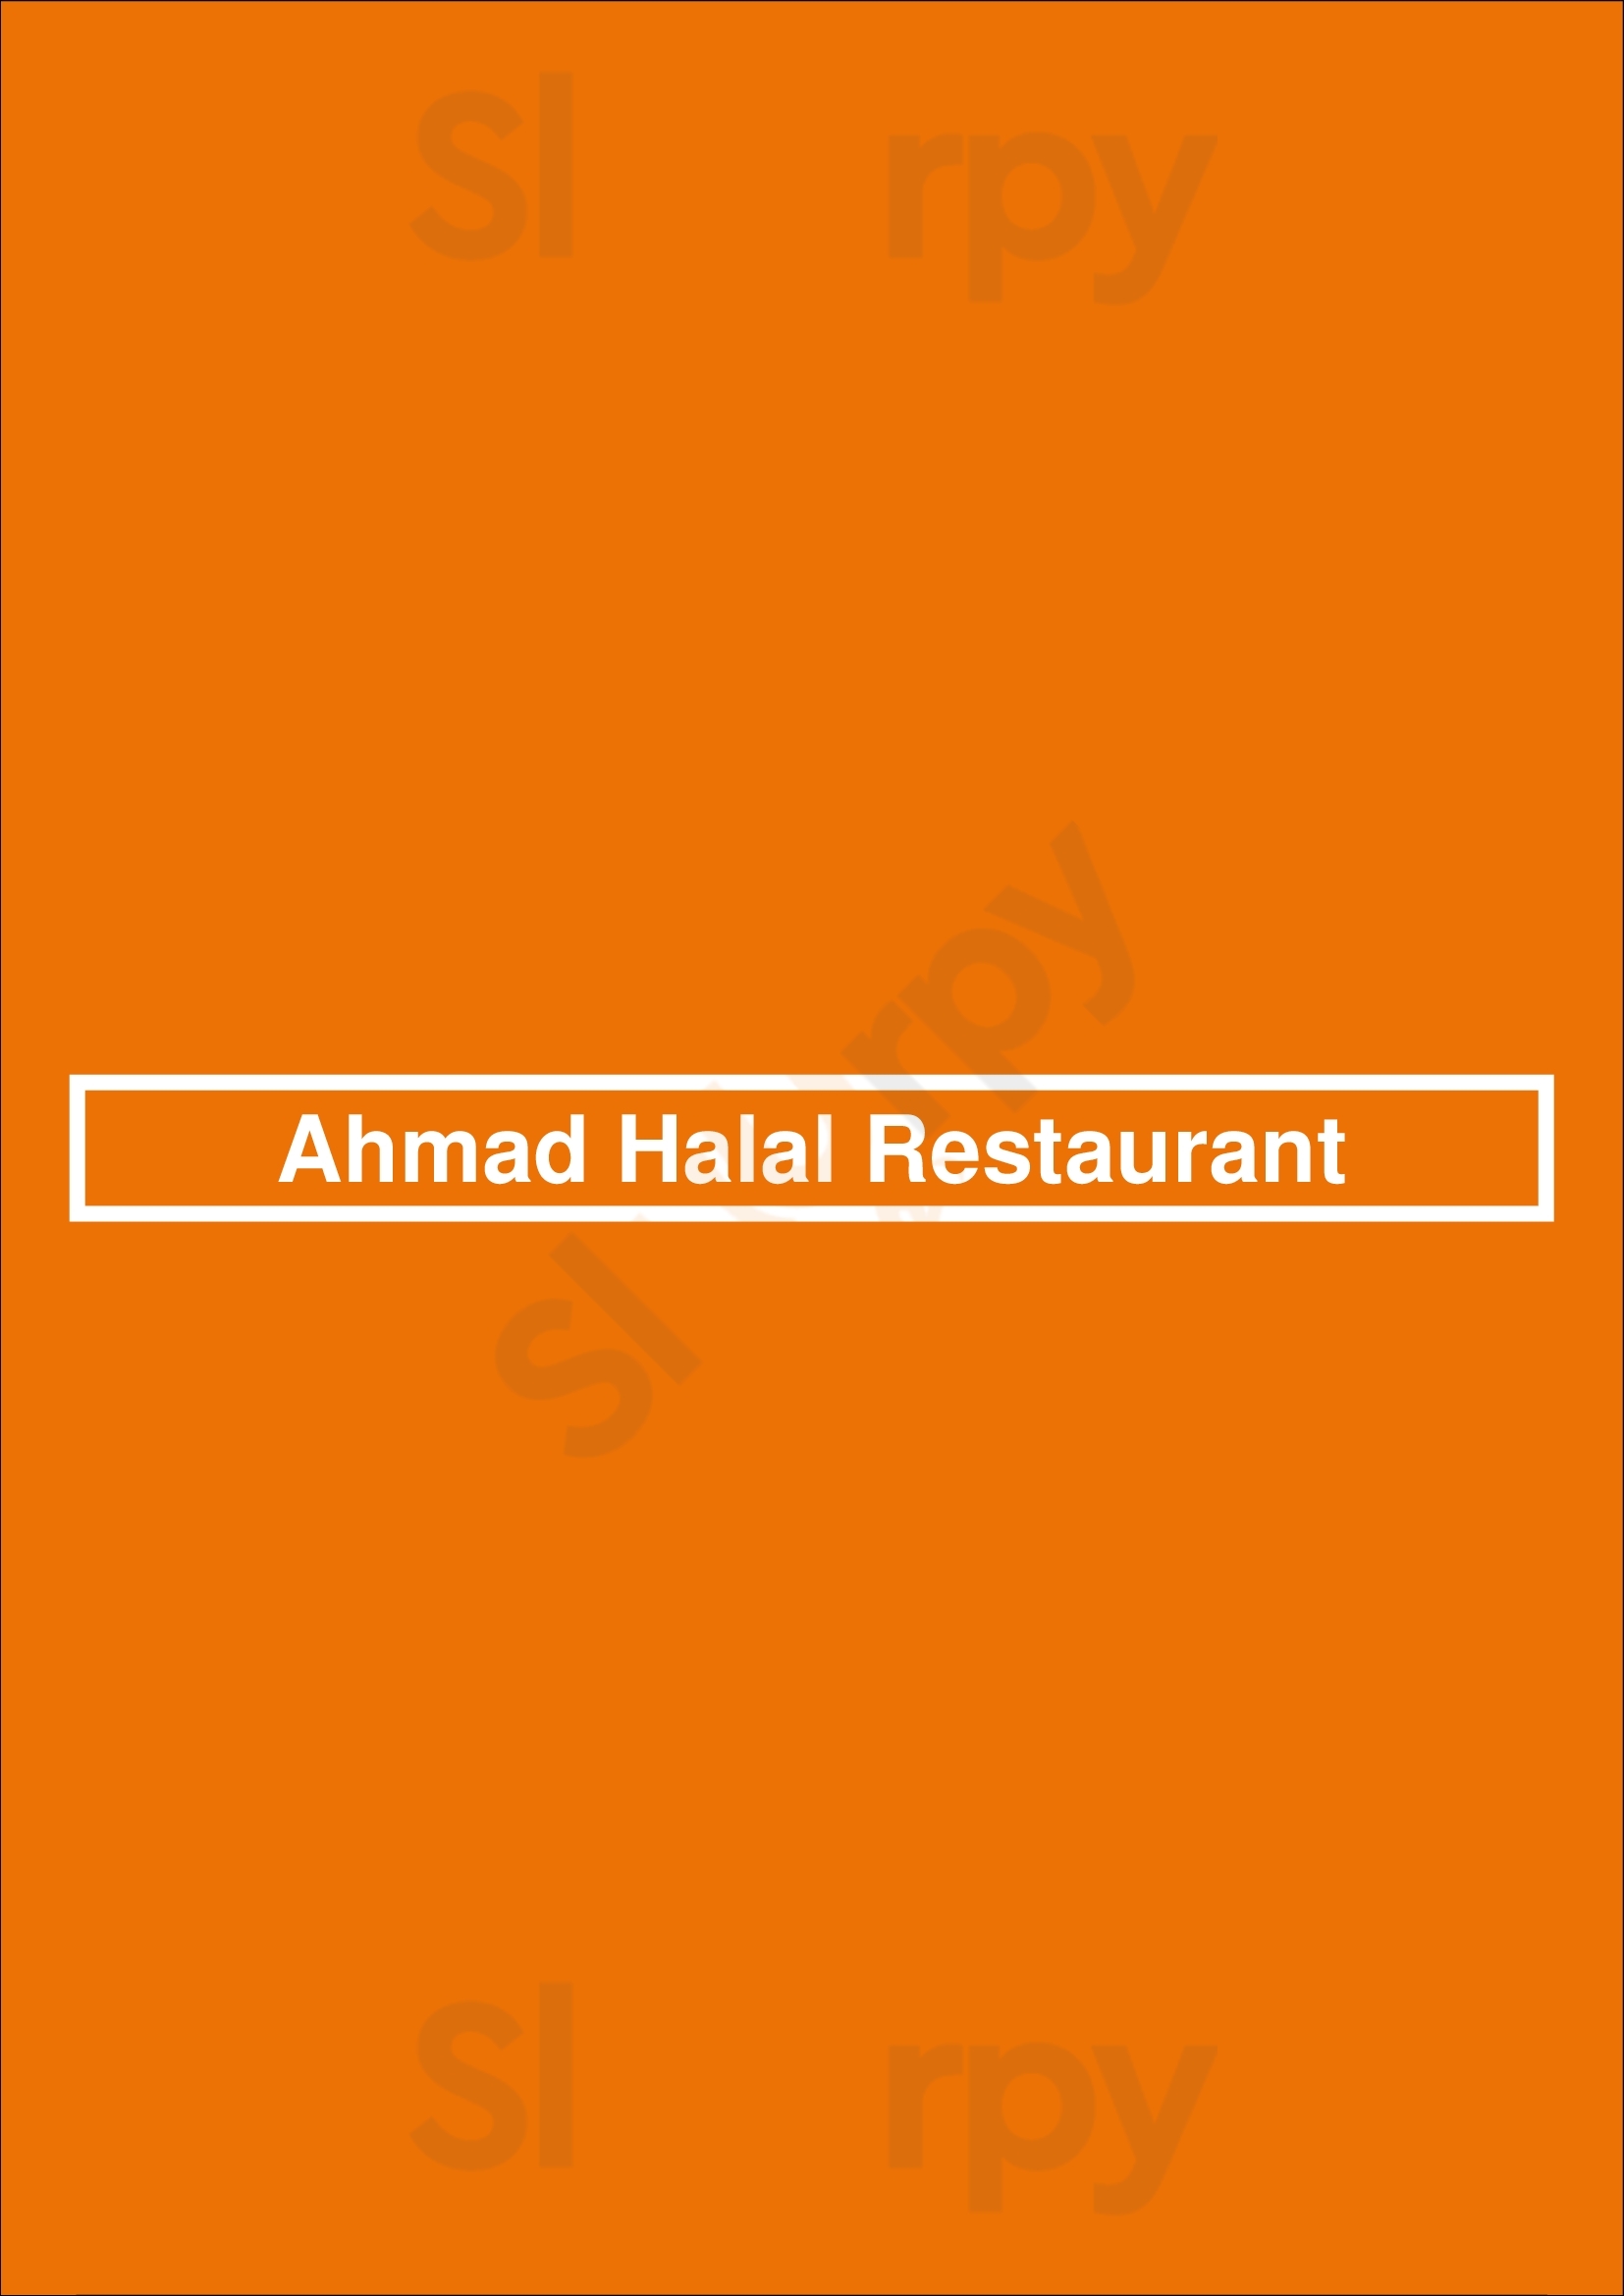 Ahmad Halal Restaurant Lisboa Menu - 1